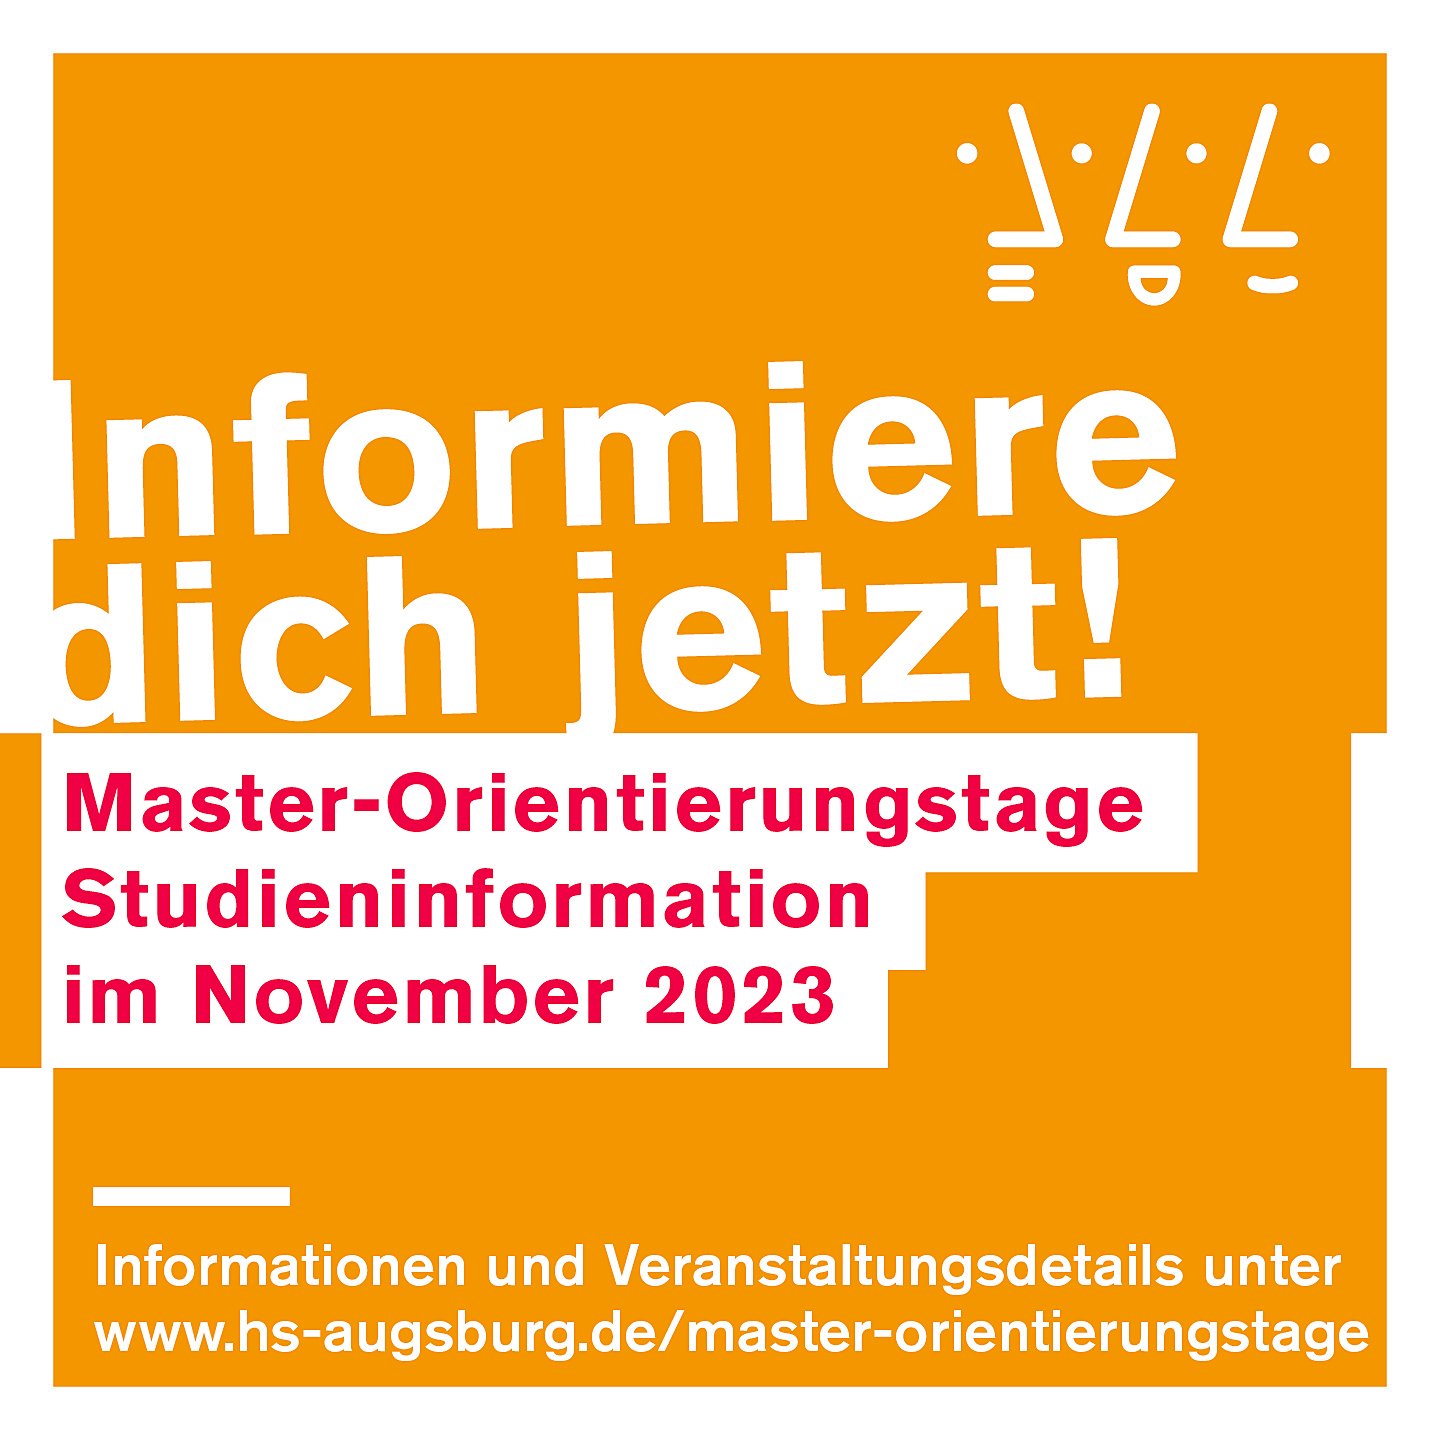 Master-Orientierungstage mit Informationsveranstaltungen zu den Masterstudiengängen der Technischen Hochschule Augsburg